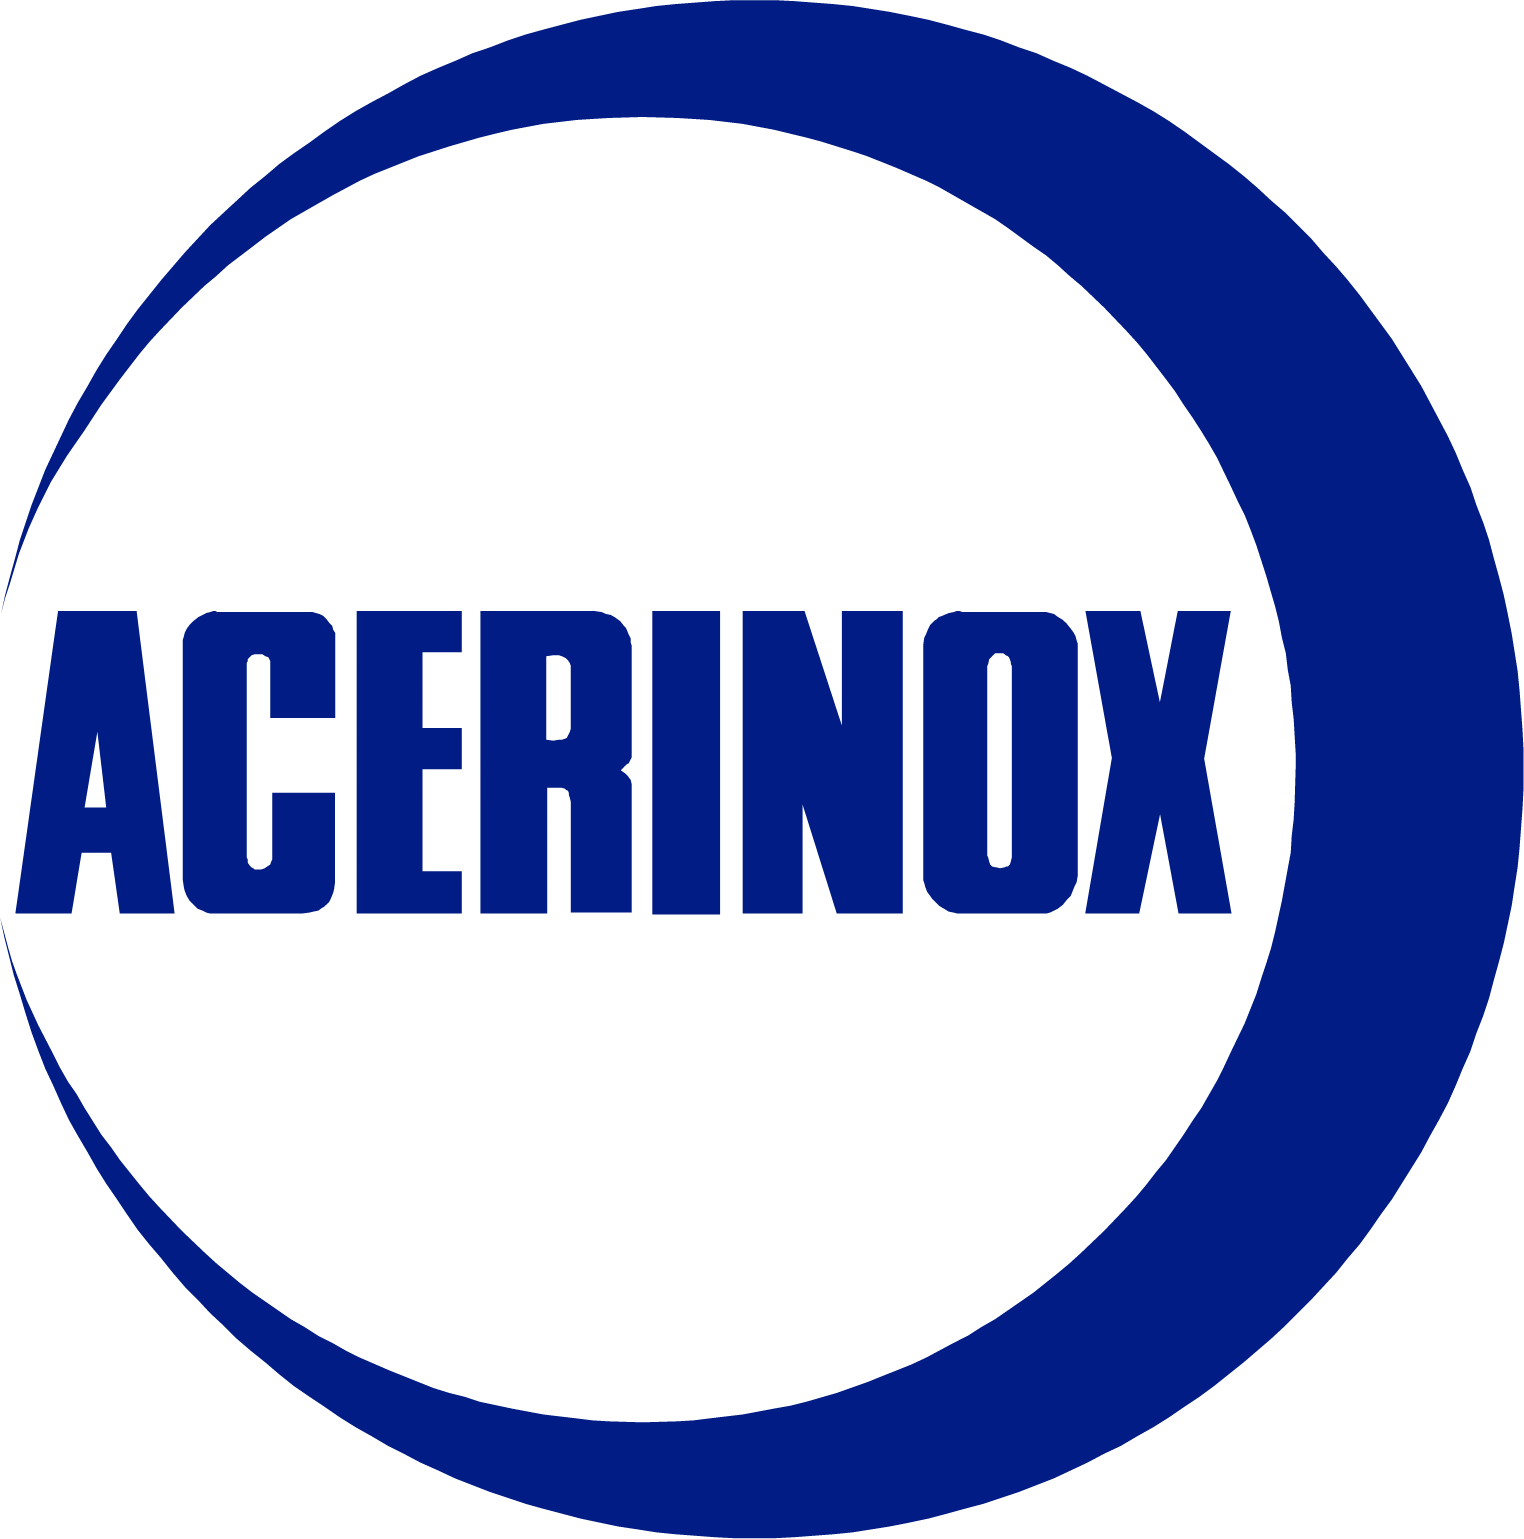 Acerinox logo large (transparent PNG)